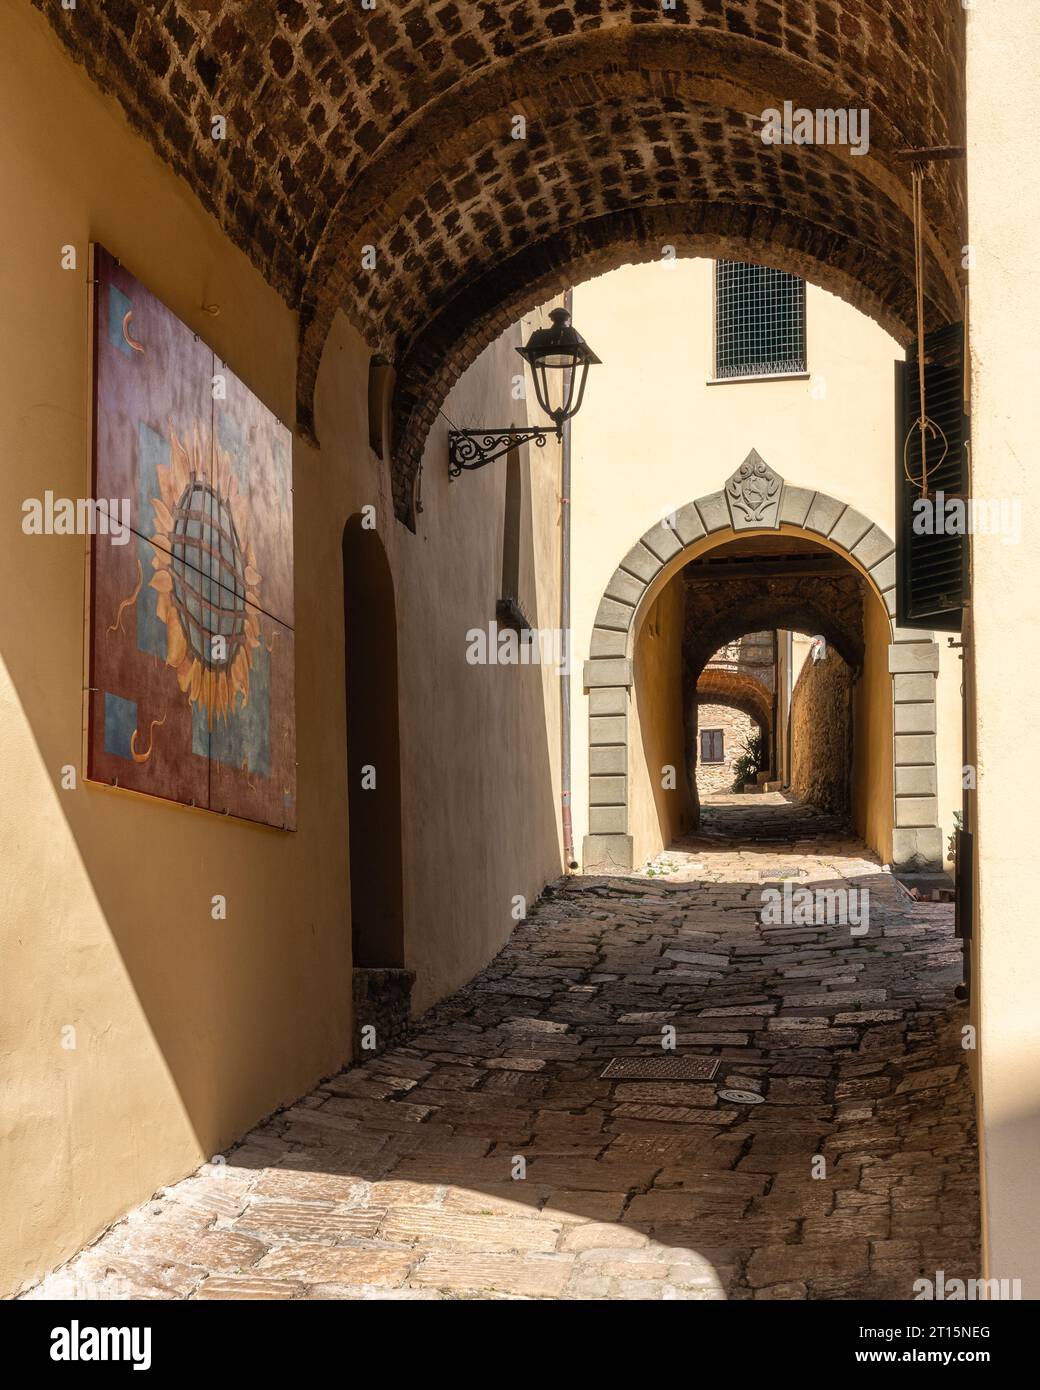 Il bellissimo villaggio di Bibbona in un soleggiato pomeriggio d'estate. Provincia di Livorno, Toscana, Italia. Foto Stock